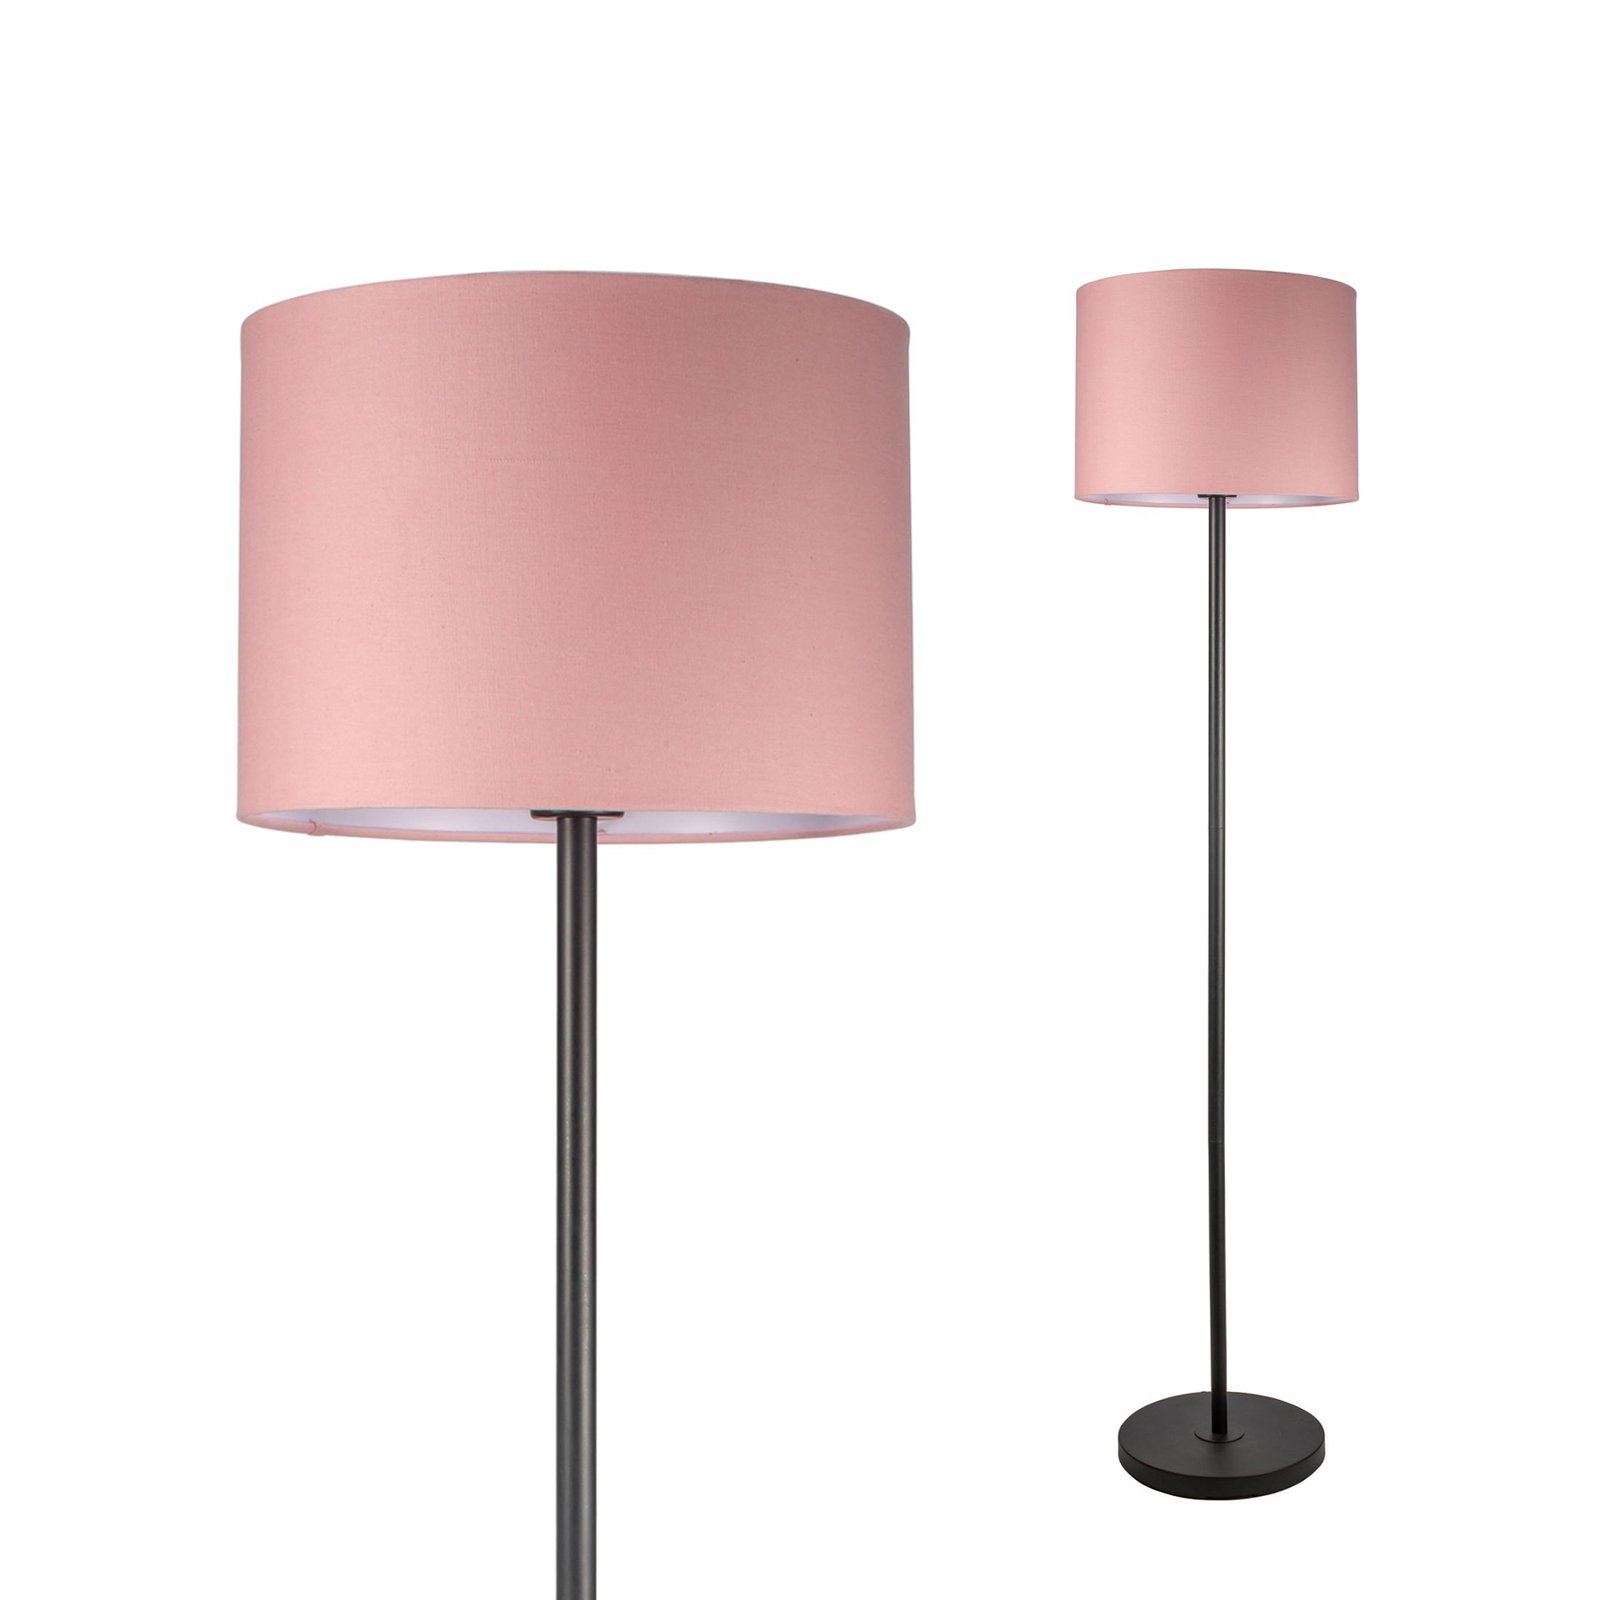 Pauleen Grand Reverie gulvlampe i rosa/svart